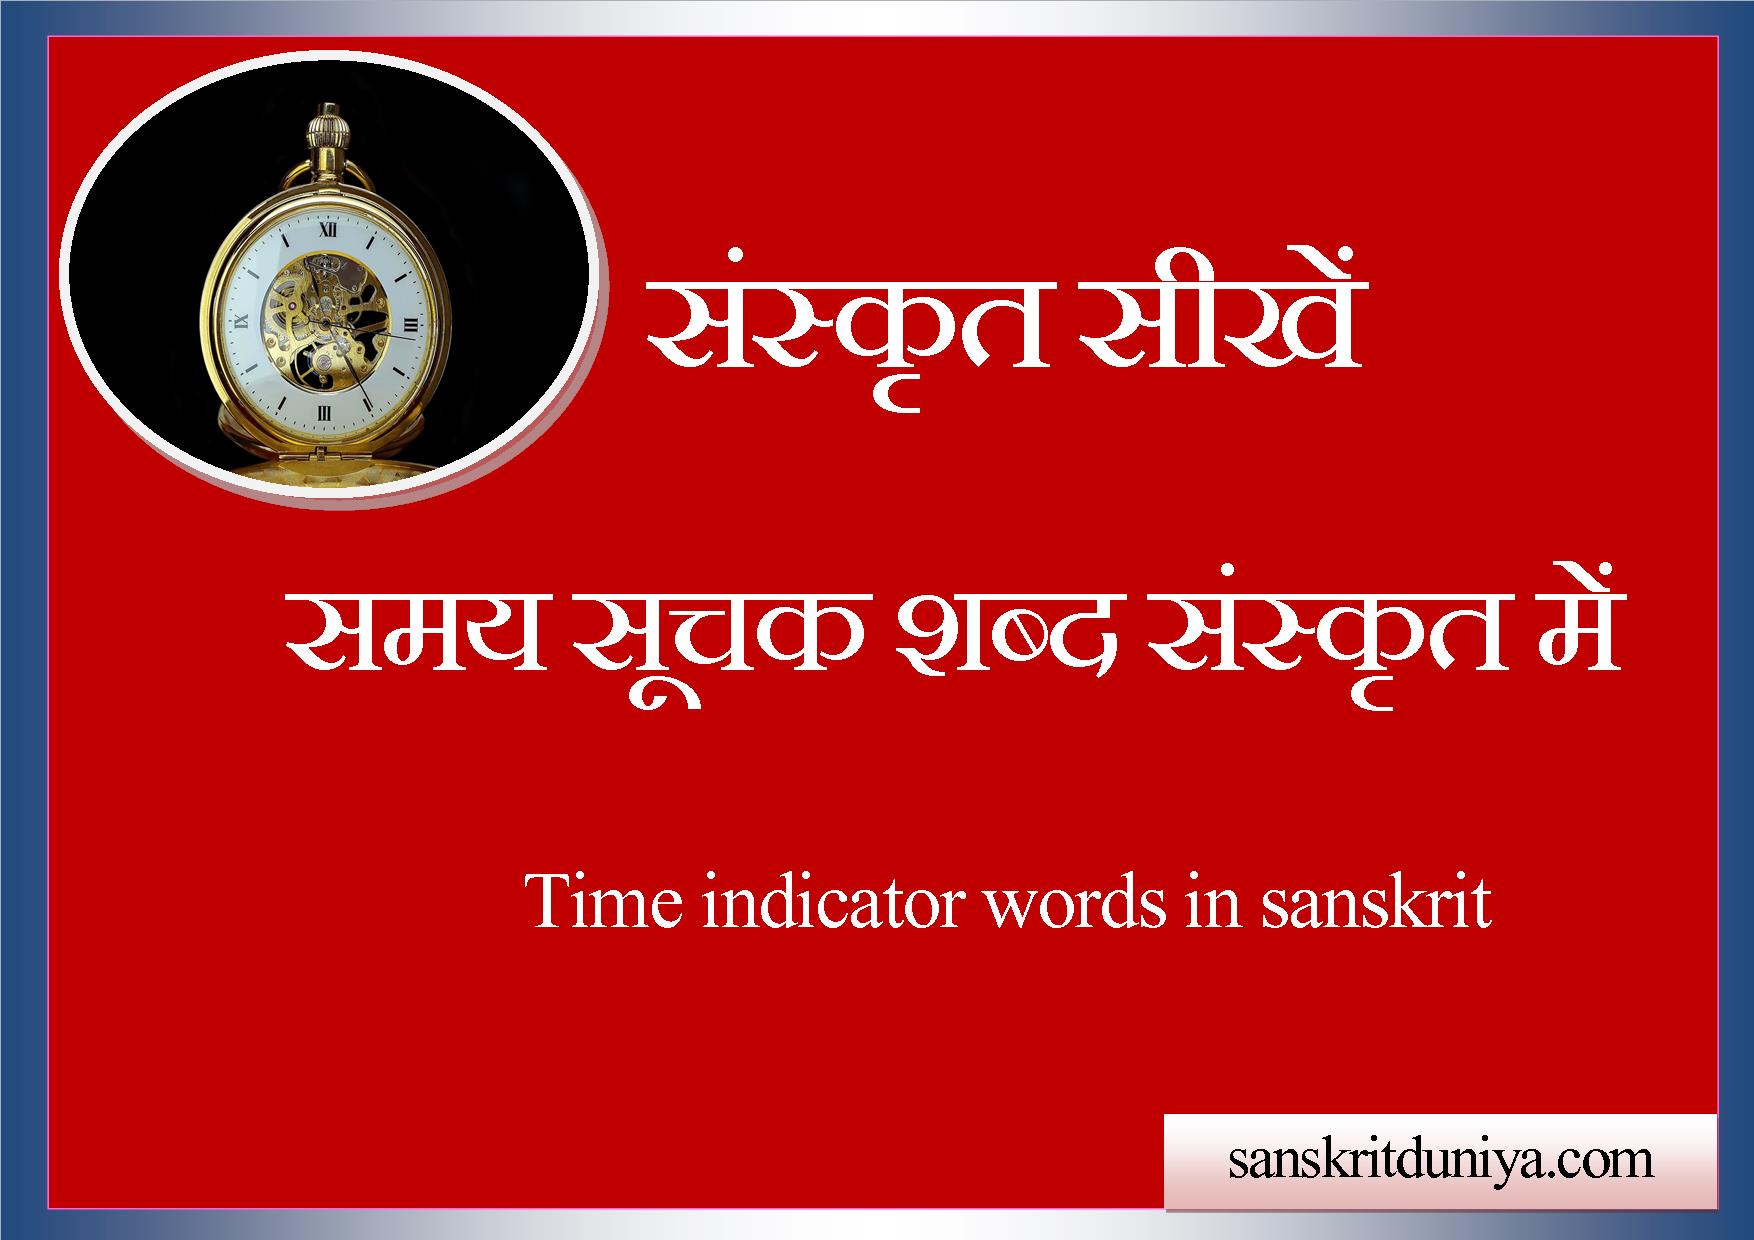 समय सूचक शब्द संस्कृत में